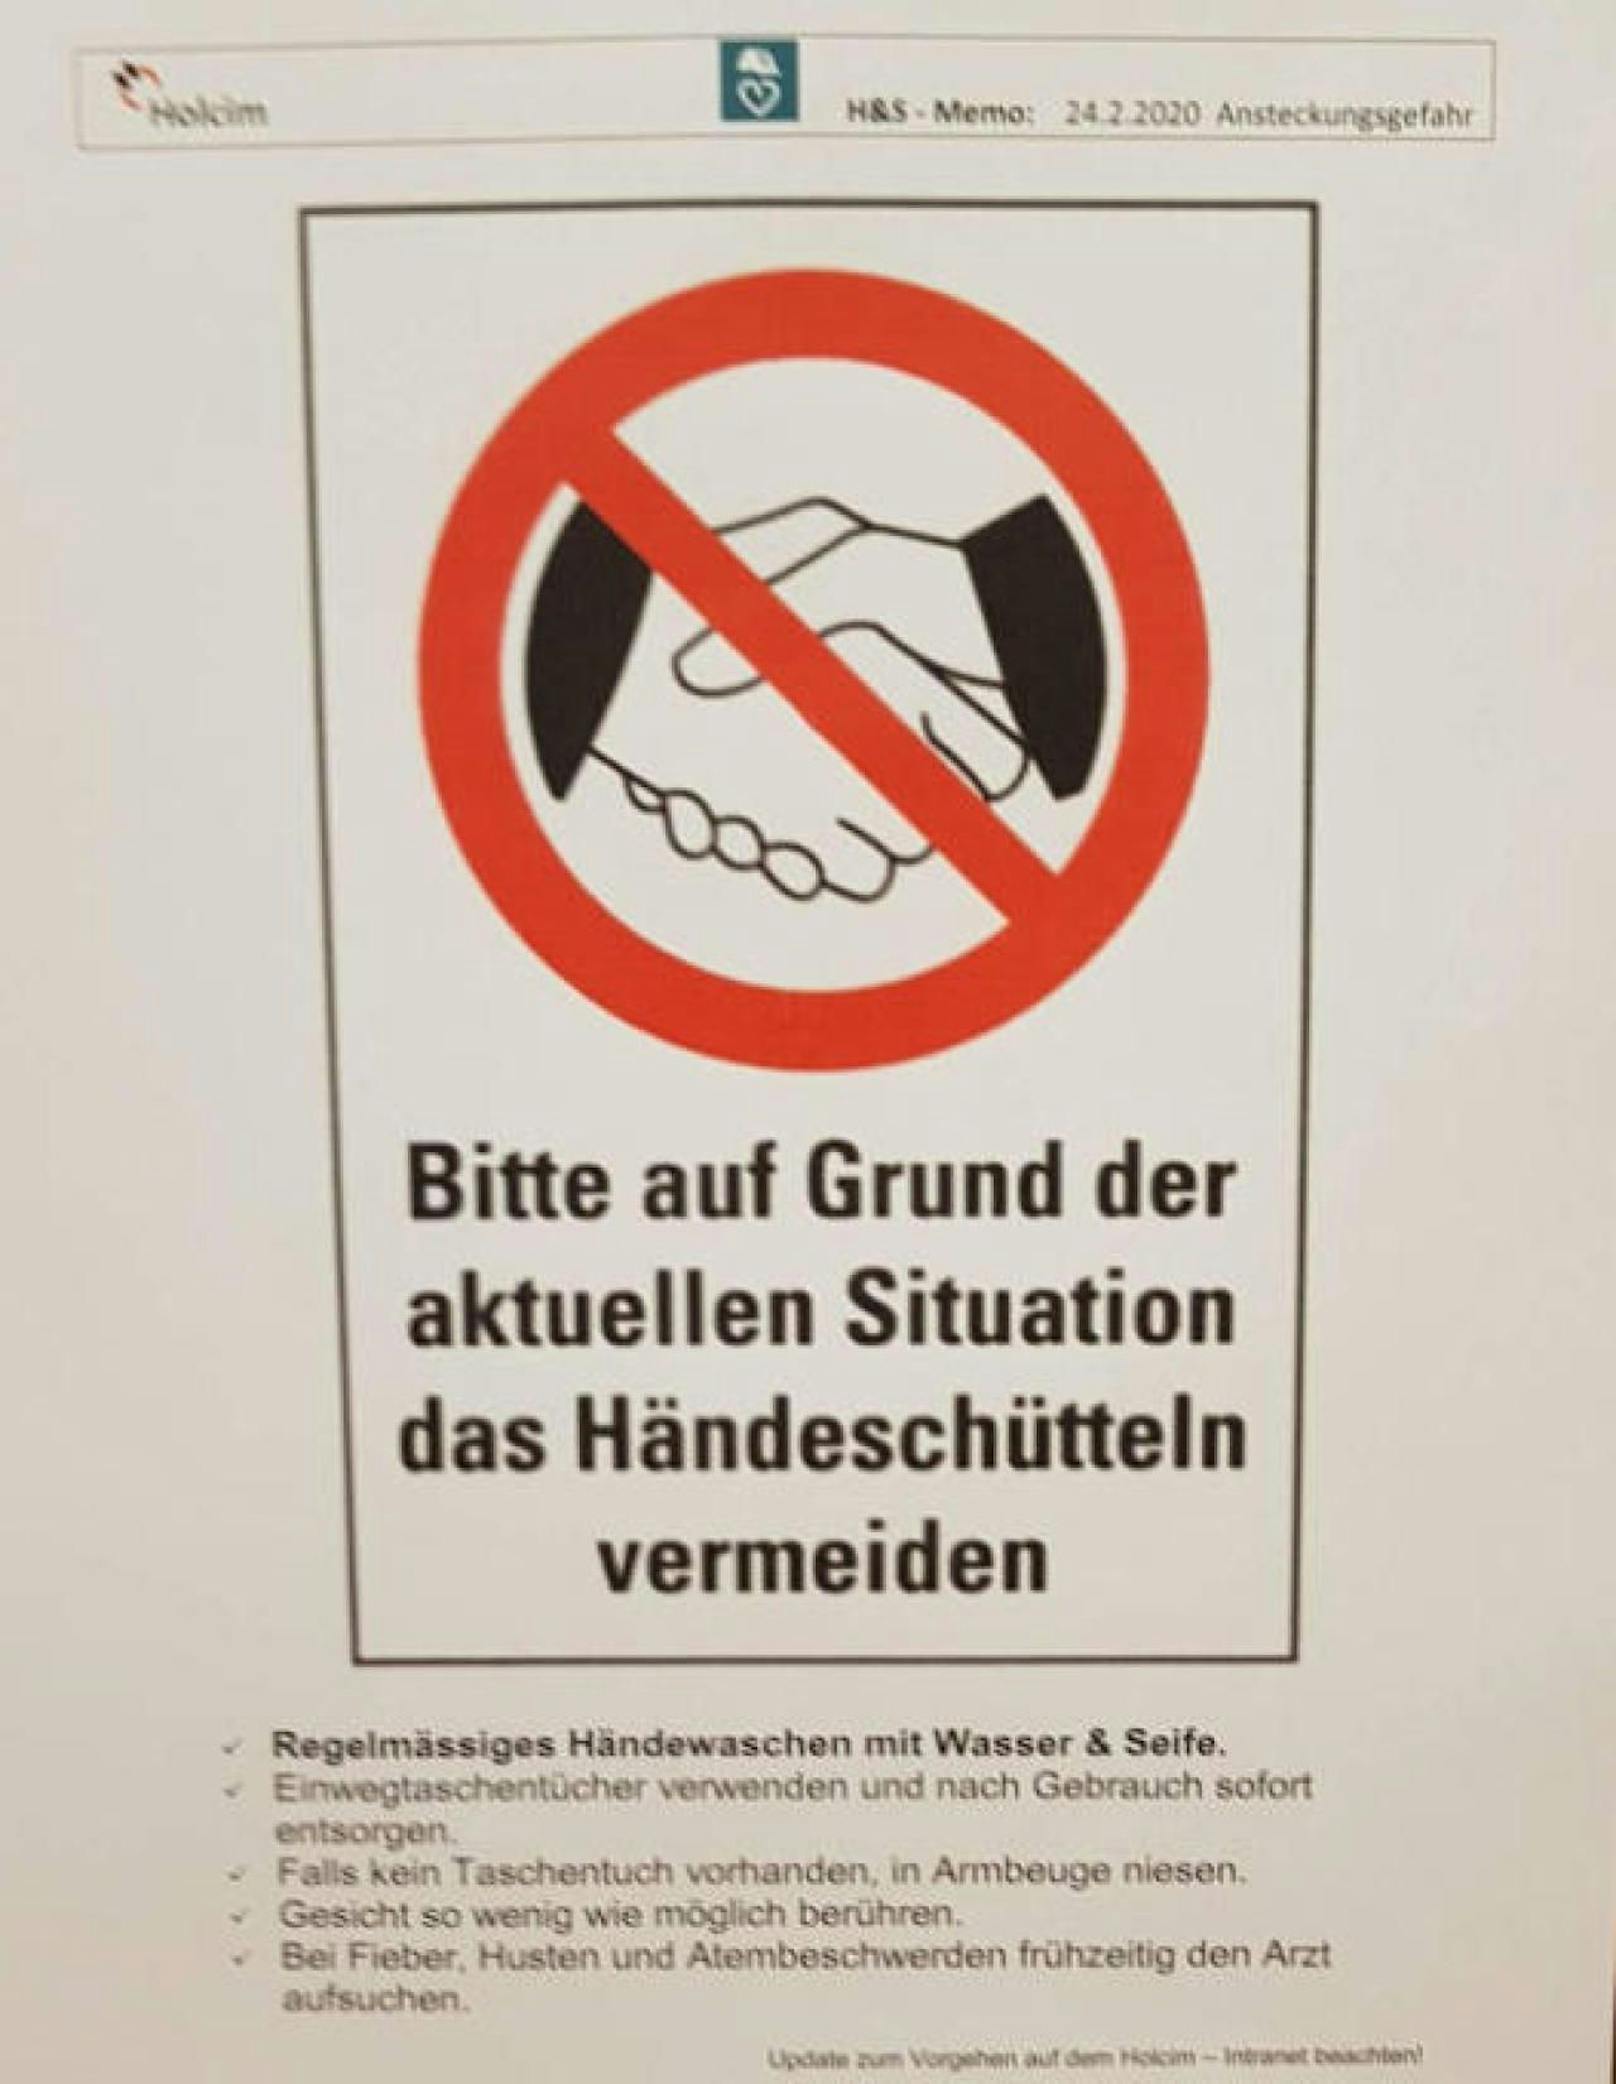 &quot;Bitte auf Grund der aktuellen Situation das Händeschütteln vermeiden&quot; heißt es auf einem Flyer, der vor dem Eingang zur Kantine des Holcim-Zementwerks in Untervaz (Schweiz) hängt. Darauf zu sehen: zwei Hände beim Handshake, darüber ein rotes Verbotszeichen.